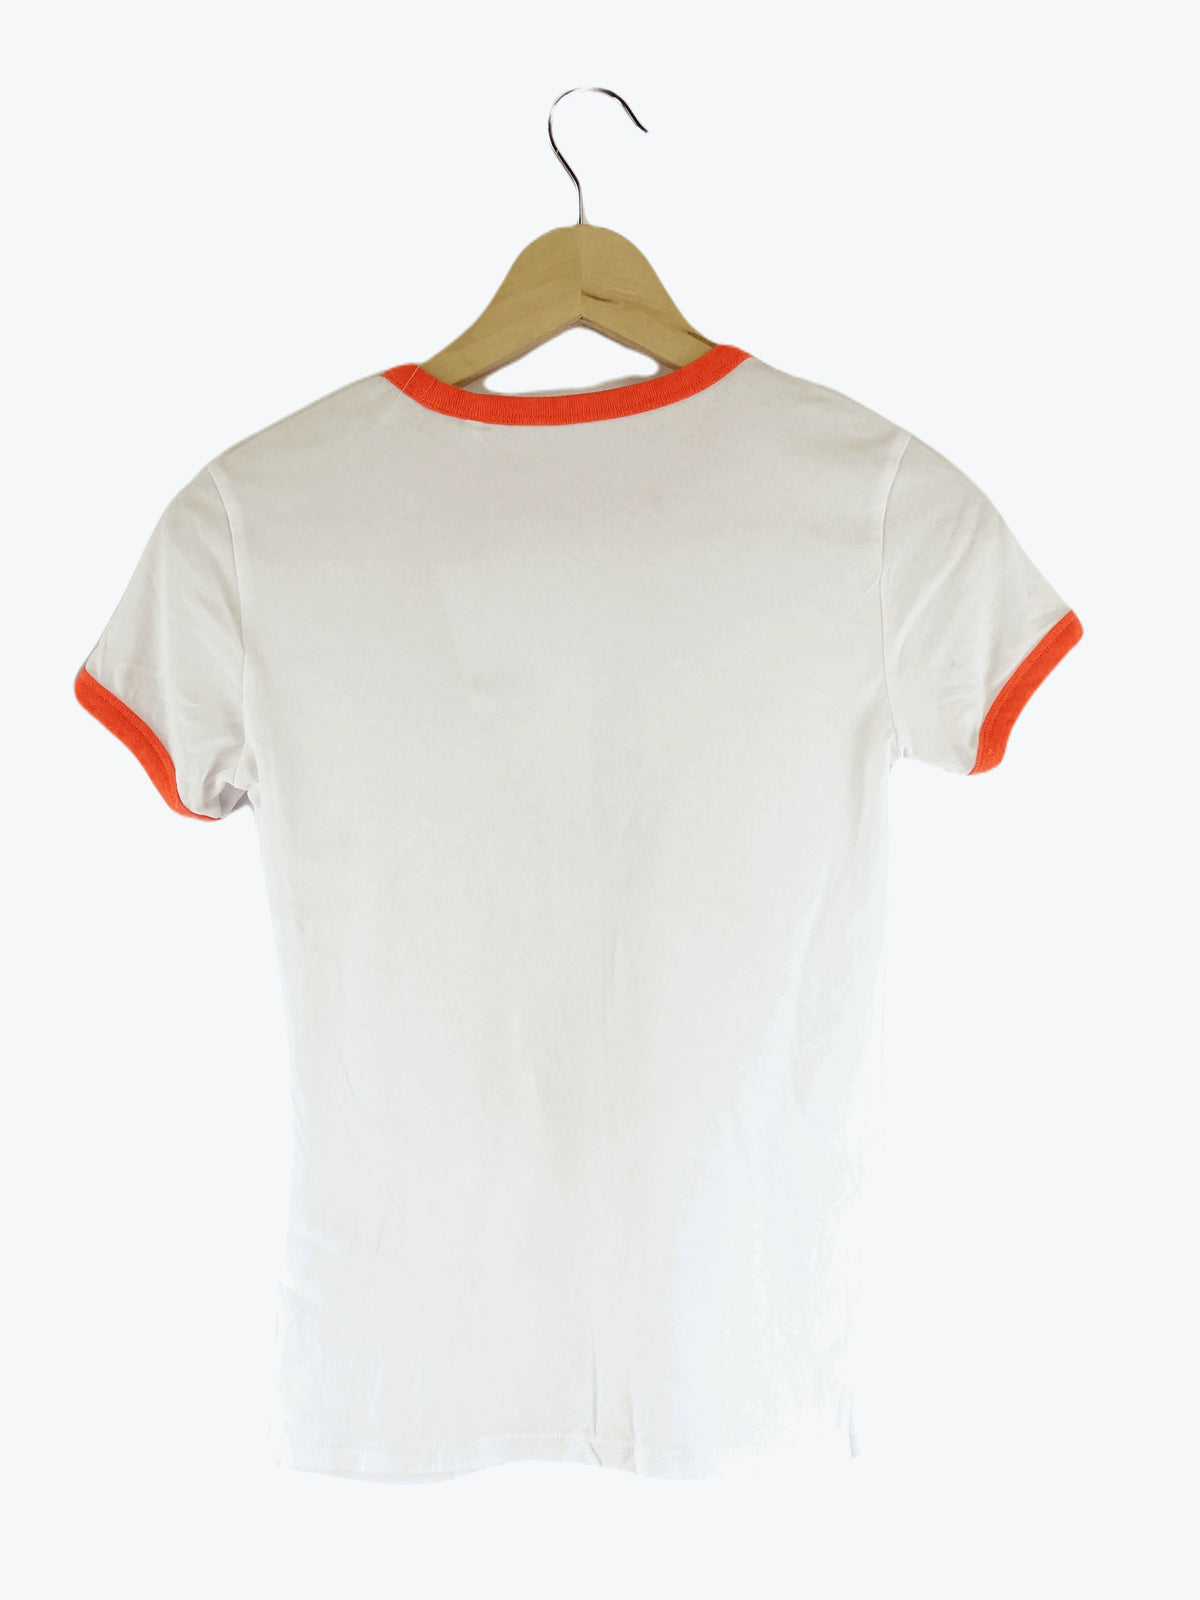 Sass &amp; Bide White and Orange T-Shirt XXS